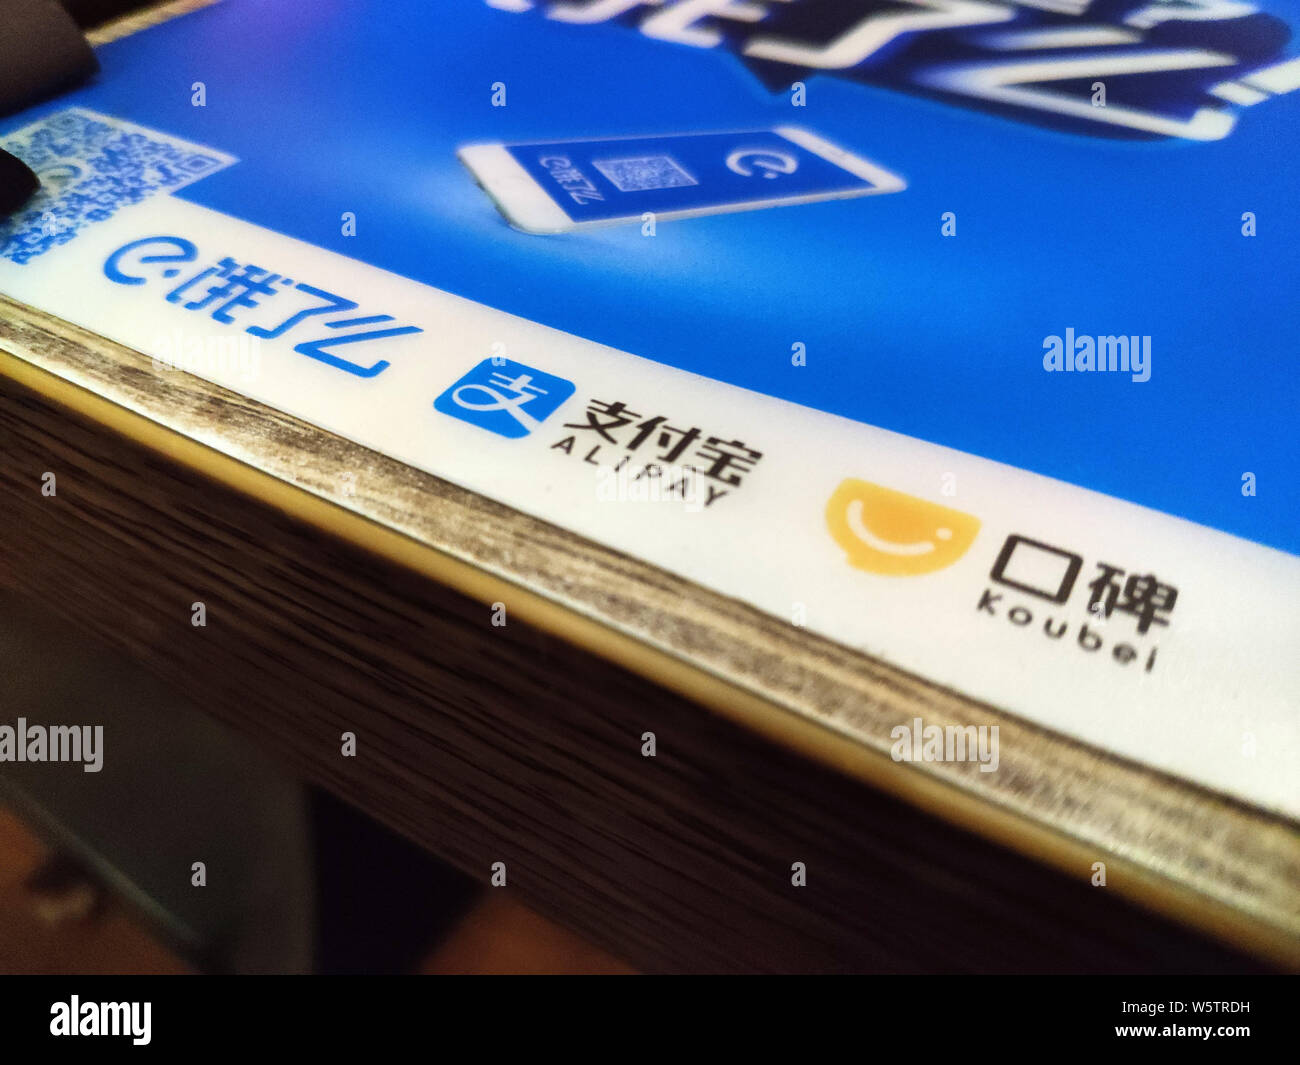 ------ Logos der chinesischen Essen Lieferung unternehmen Elé. Mir von Alibaba Group, Alibaba online zu offline (O2O) Service Plattform Koubei und Chinesische gesichert Stockfoto